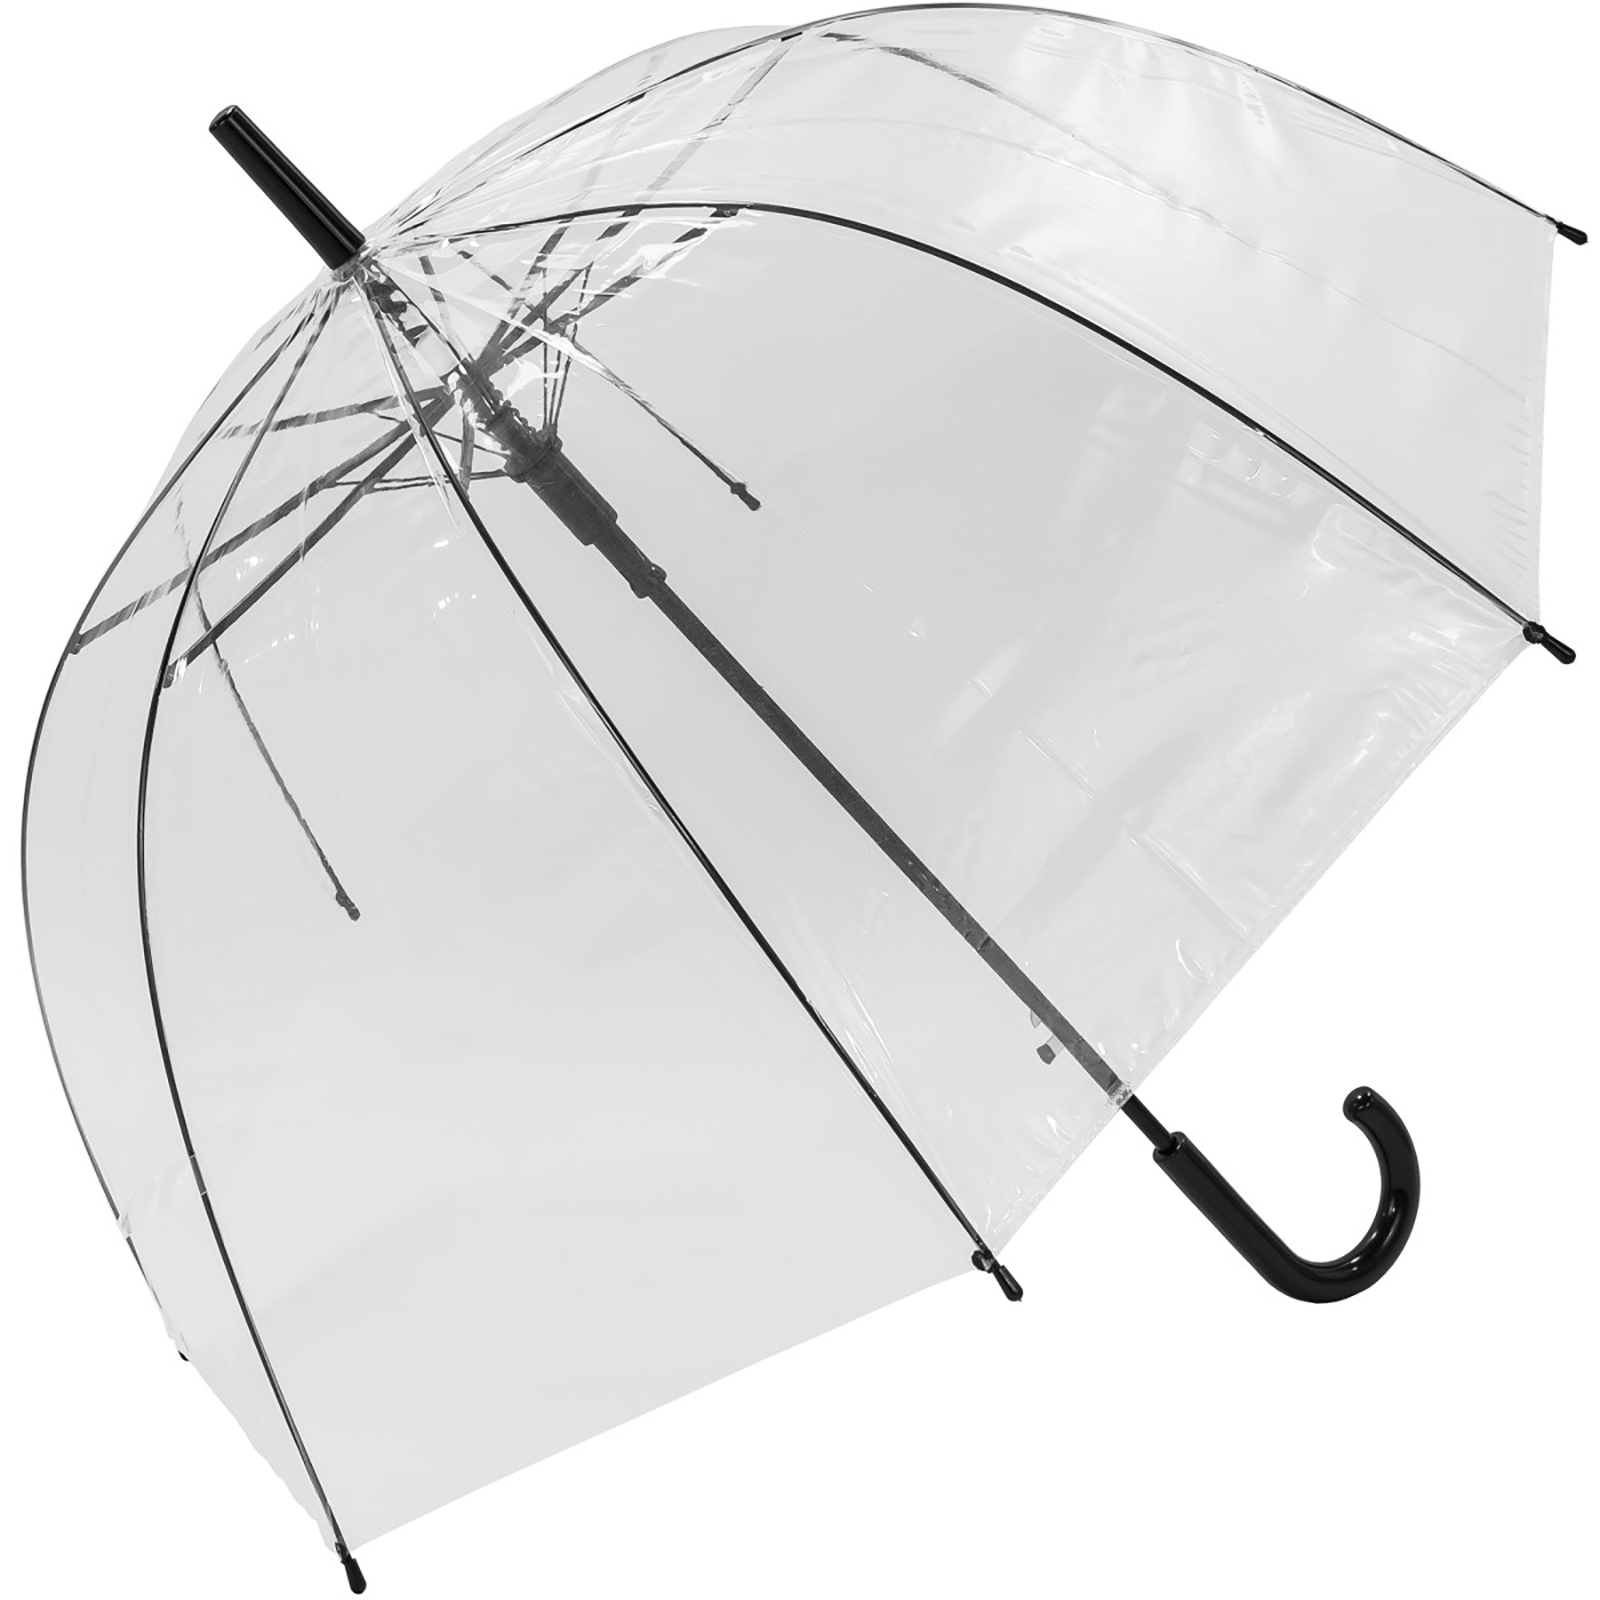 Susino Transparent Dome Umbrella